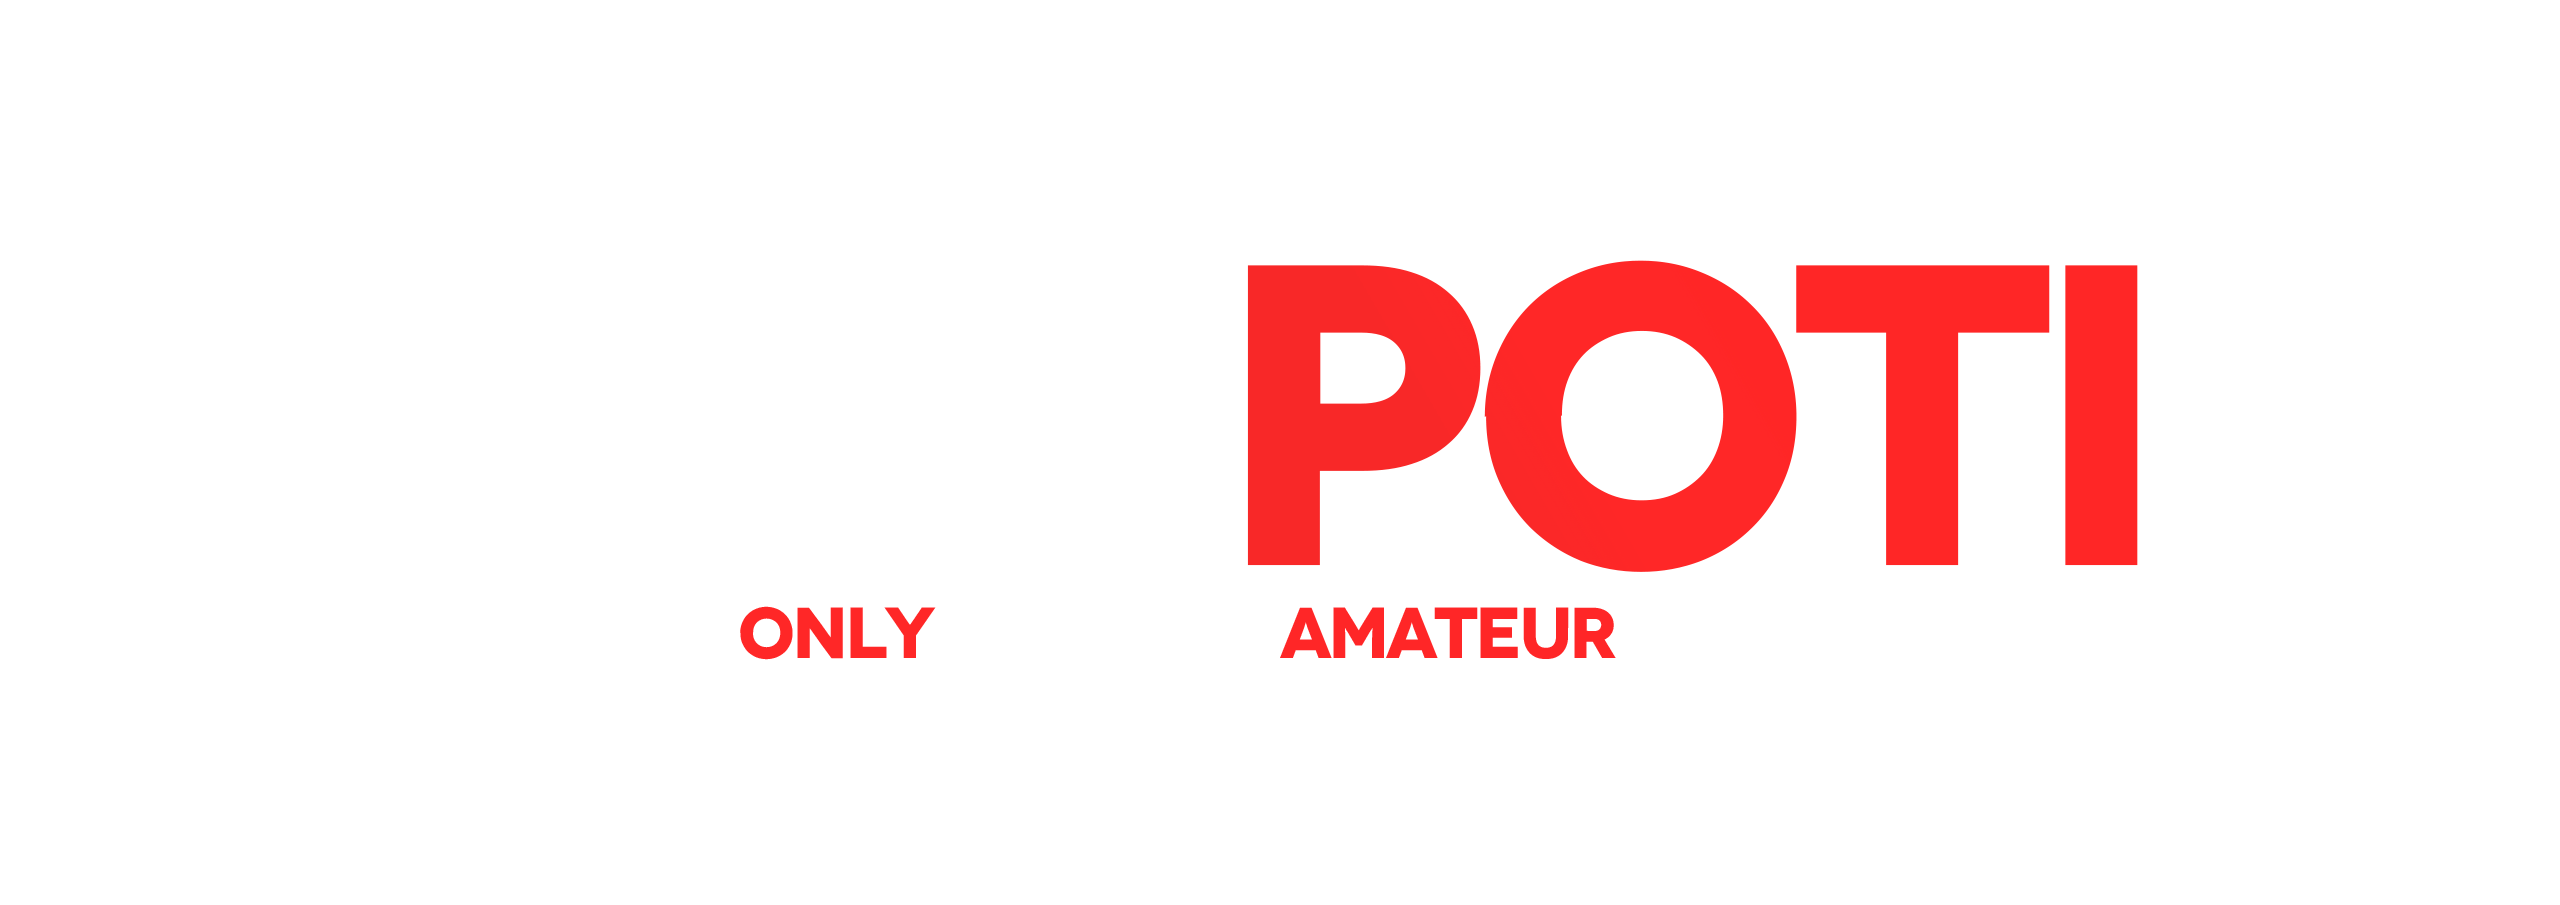 Best Free Amateur Porn Videos, Only real amateur porn video